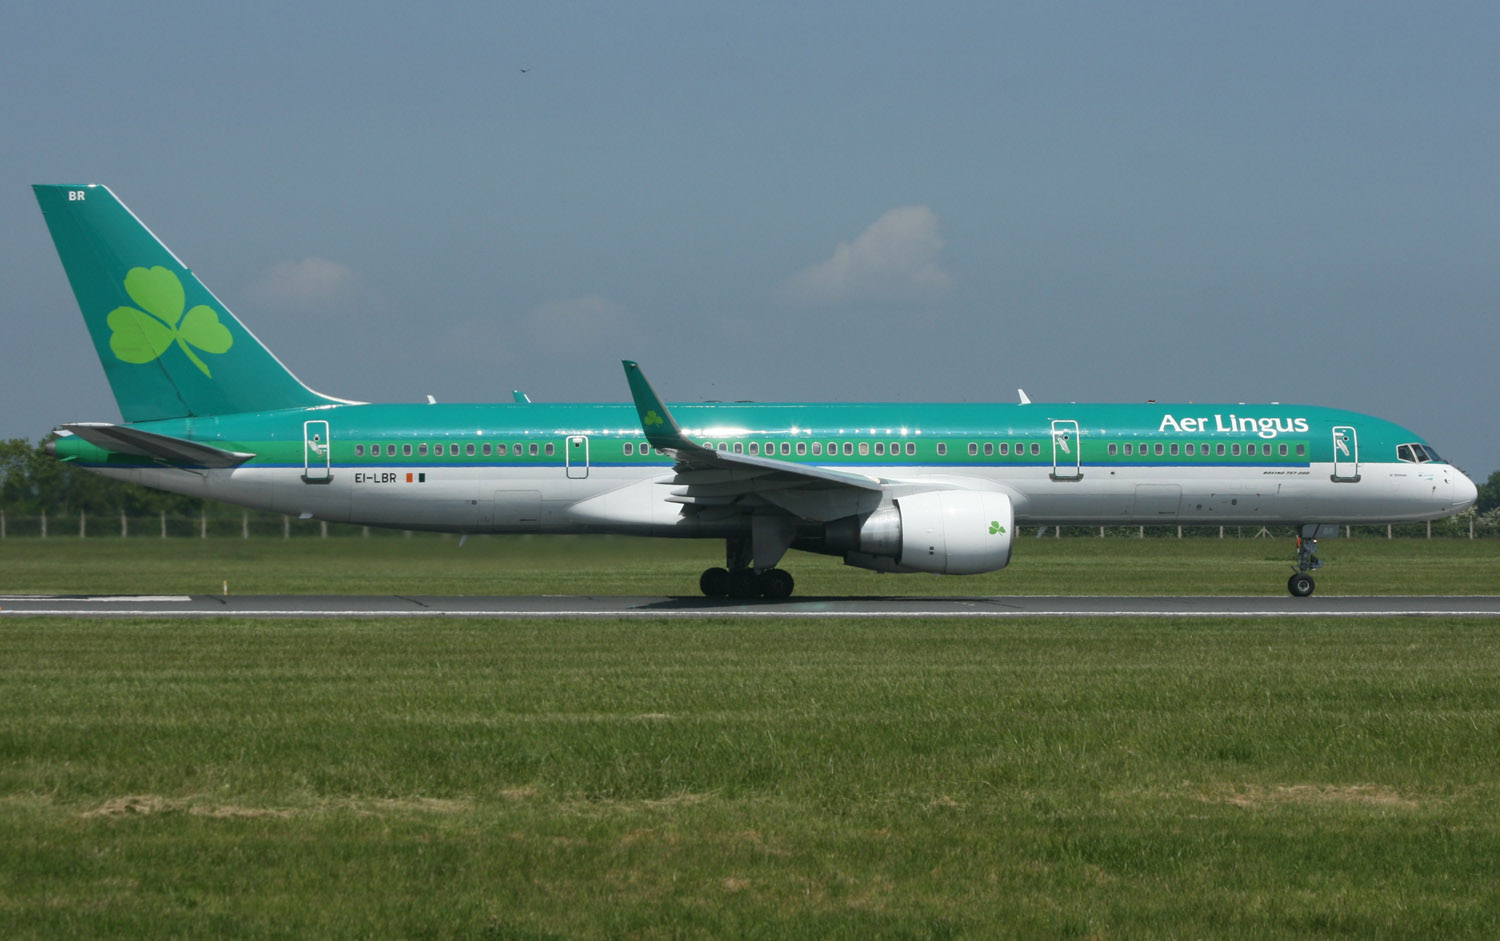 Código promocional Aer Lingus